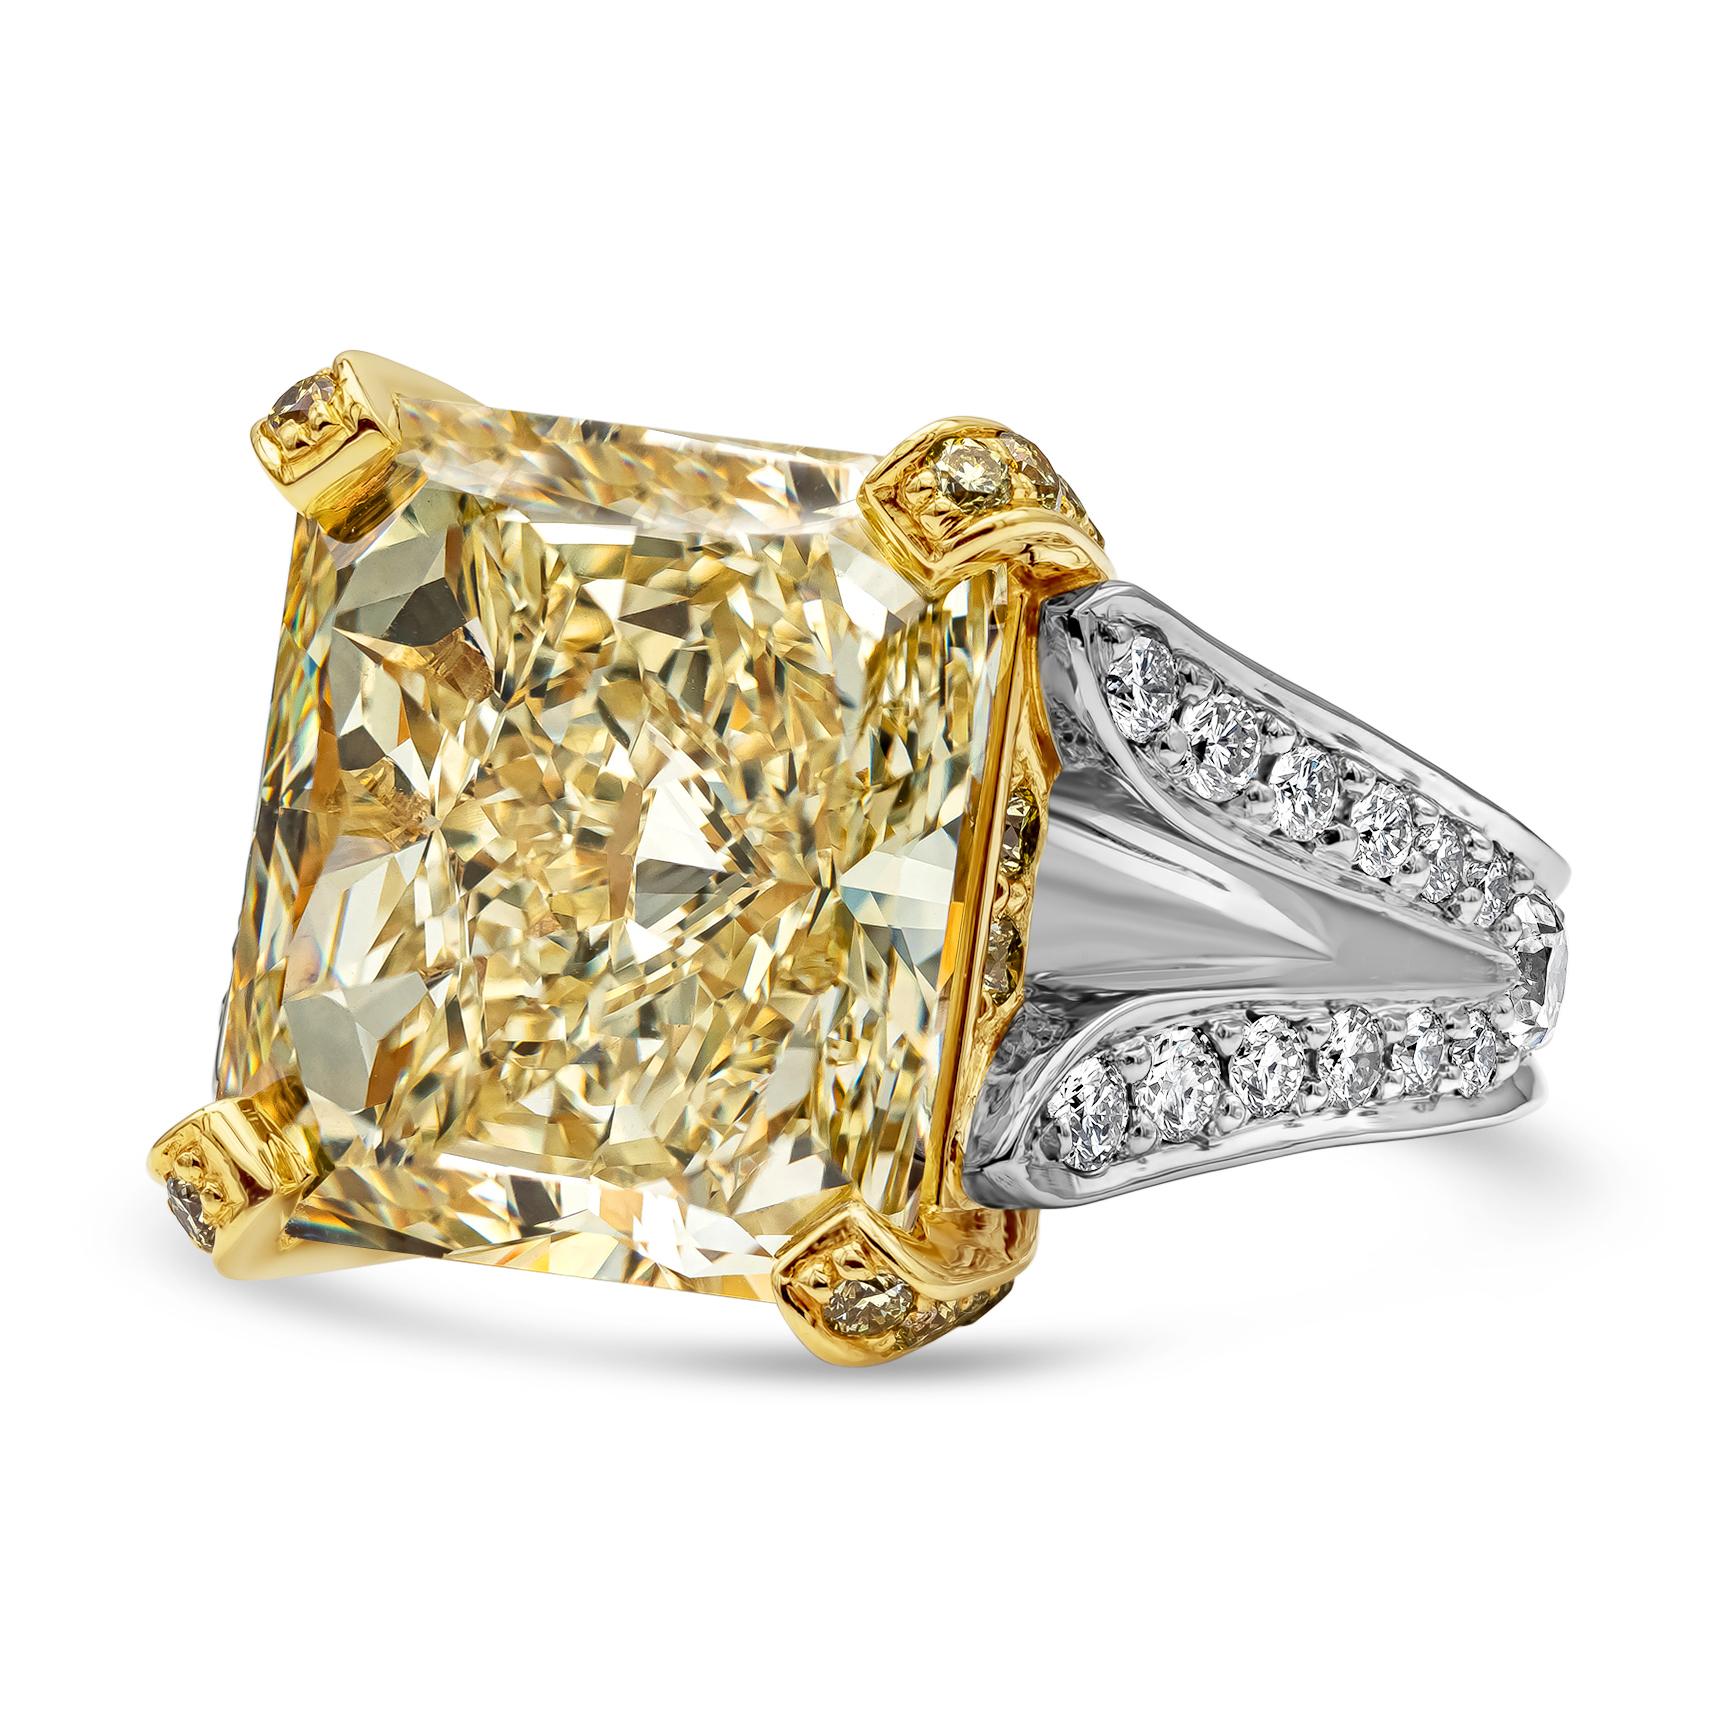 Eleganter und luxuriöser Verlobungsring mit geteiltem Schaft, der einen lebhaften und farbenfrohen GIA-zertifizierten gelben Diamanten mit 13,95 Karat im Brillantschliff und einer Reinheit von VS1 präsentiert. Der Mittelstein ist in einem